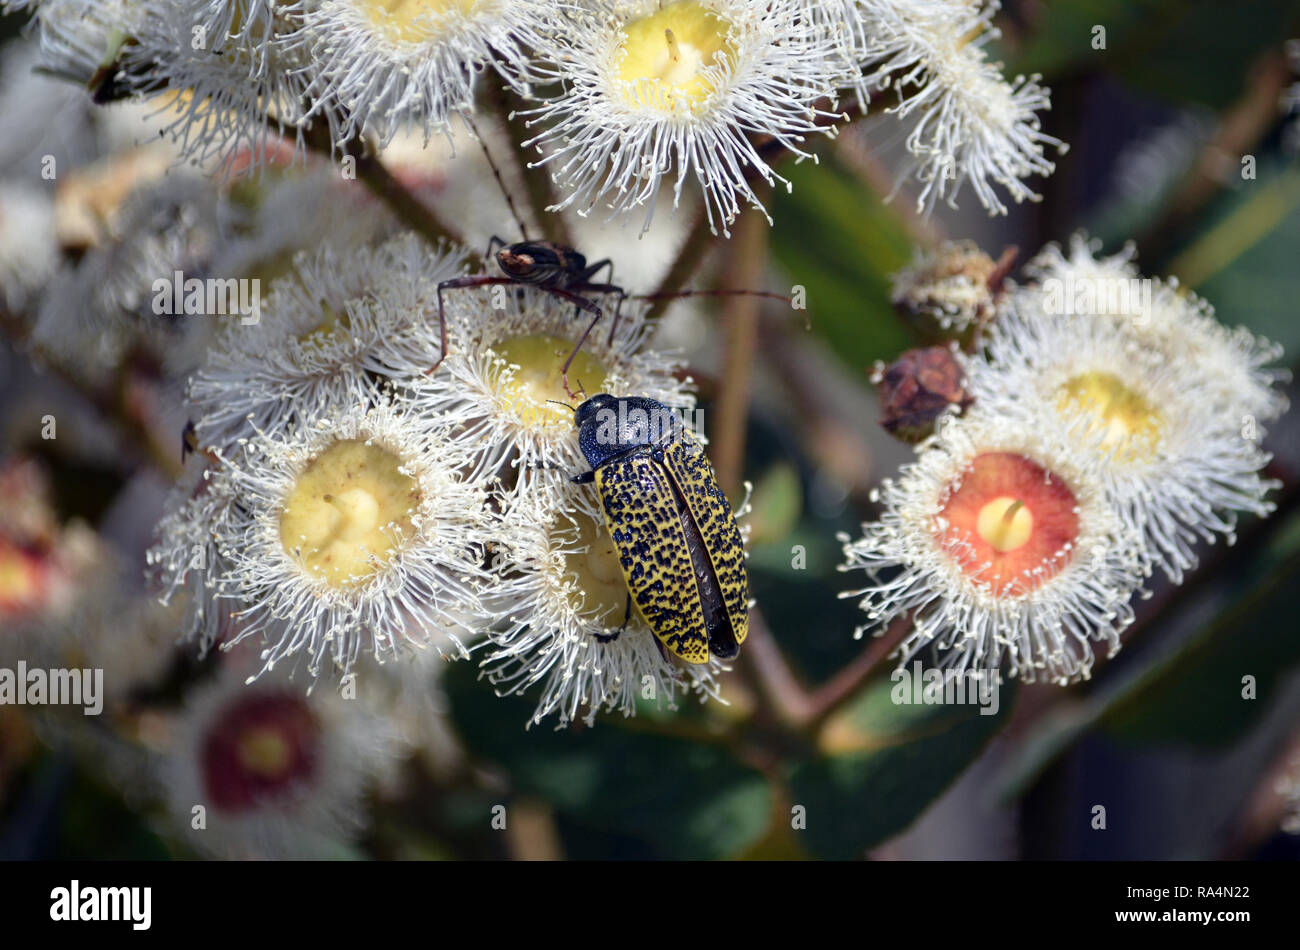 Rousseur australiennes indigènes Jewel Beetle, Stigmodera macularia, se nourrissant de nectar de fleurs, Angophora hispida Royal National Park, NSW, Australie Banque D'Images